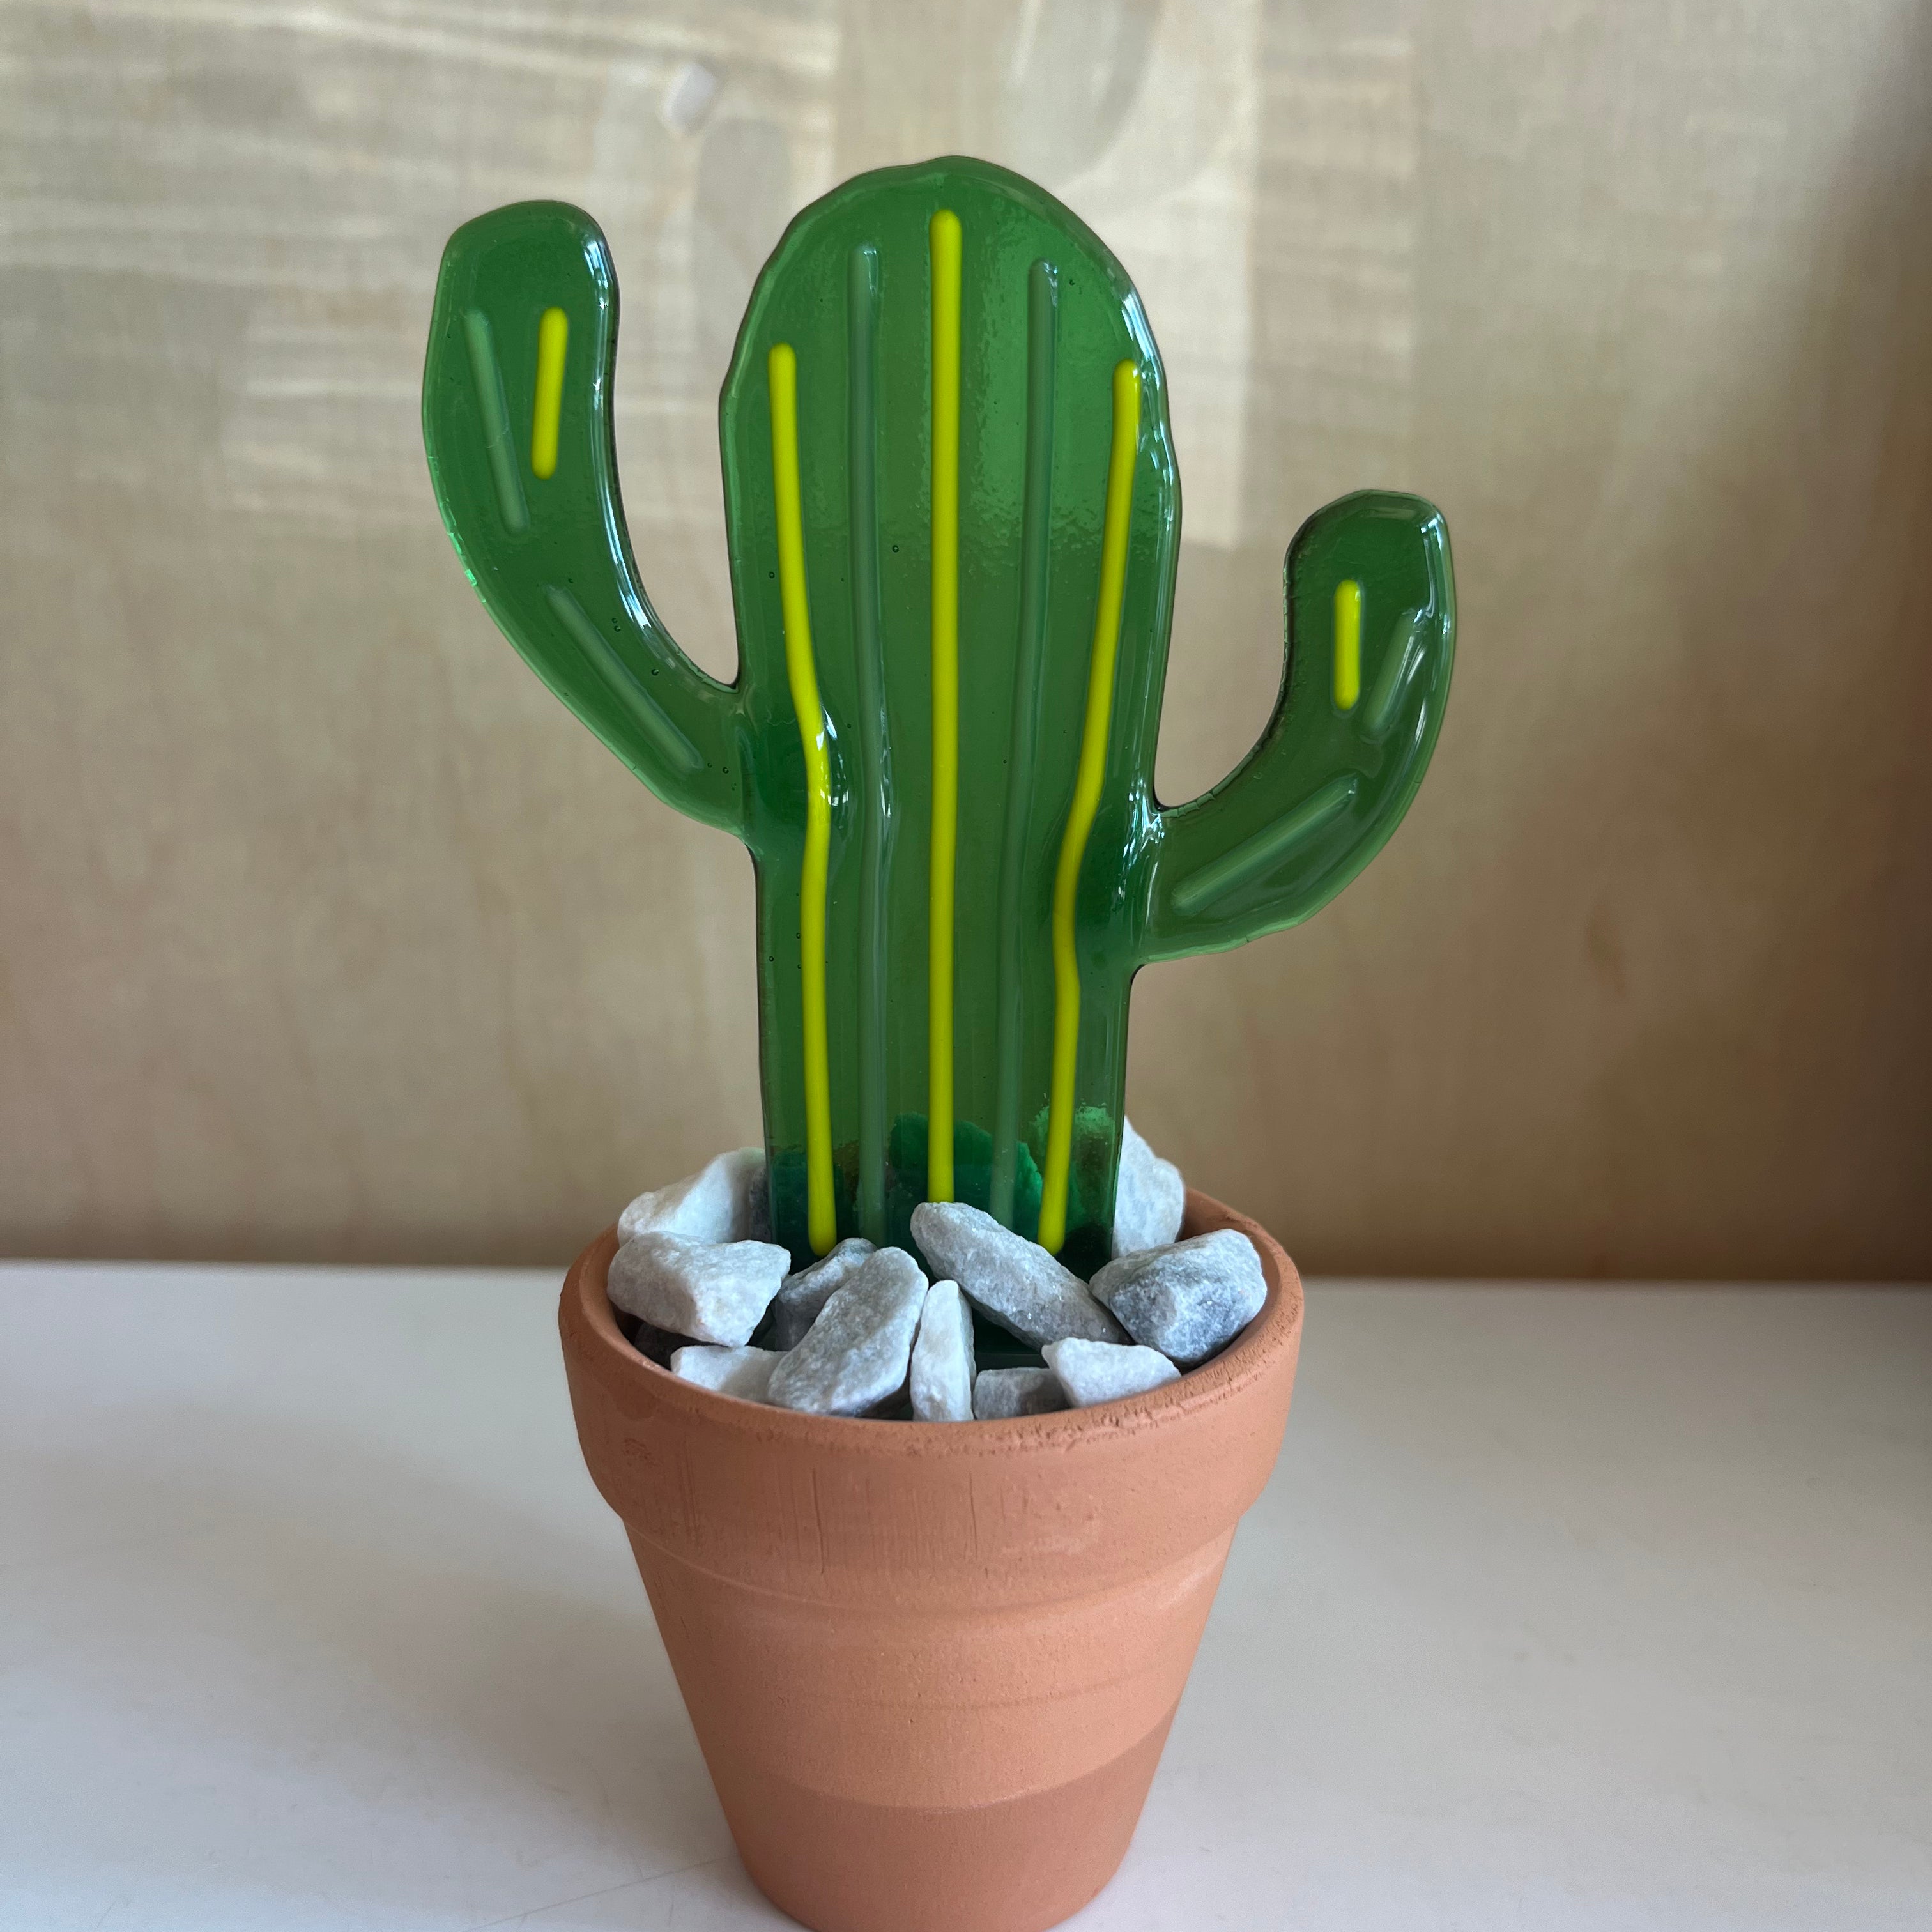 Striped Cactus